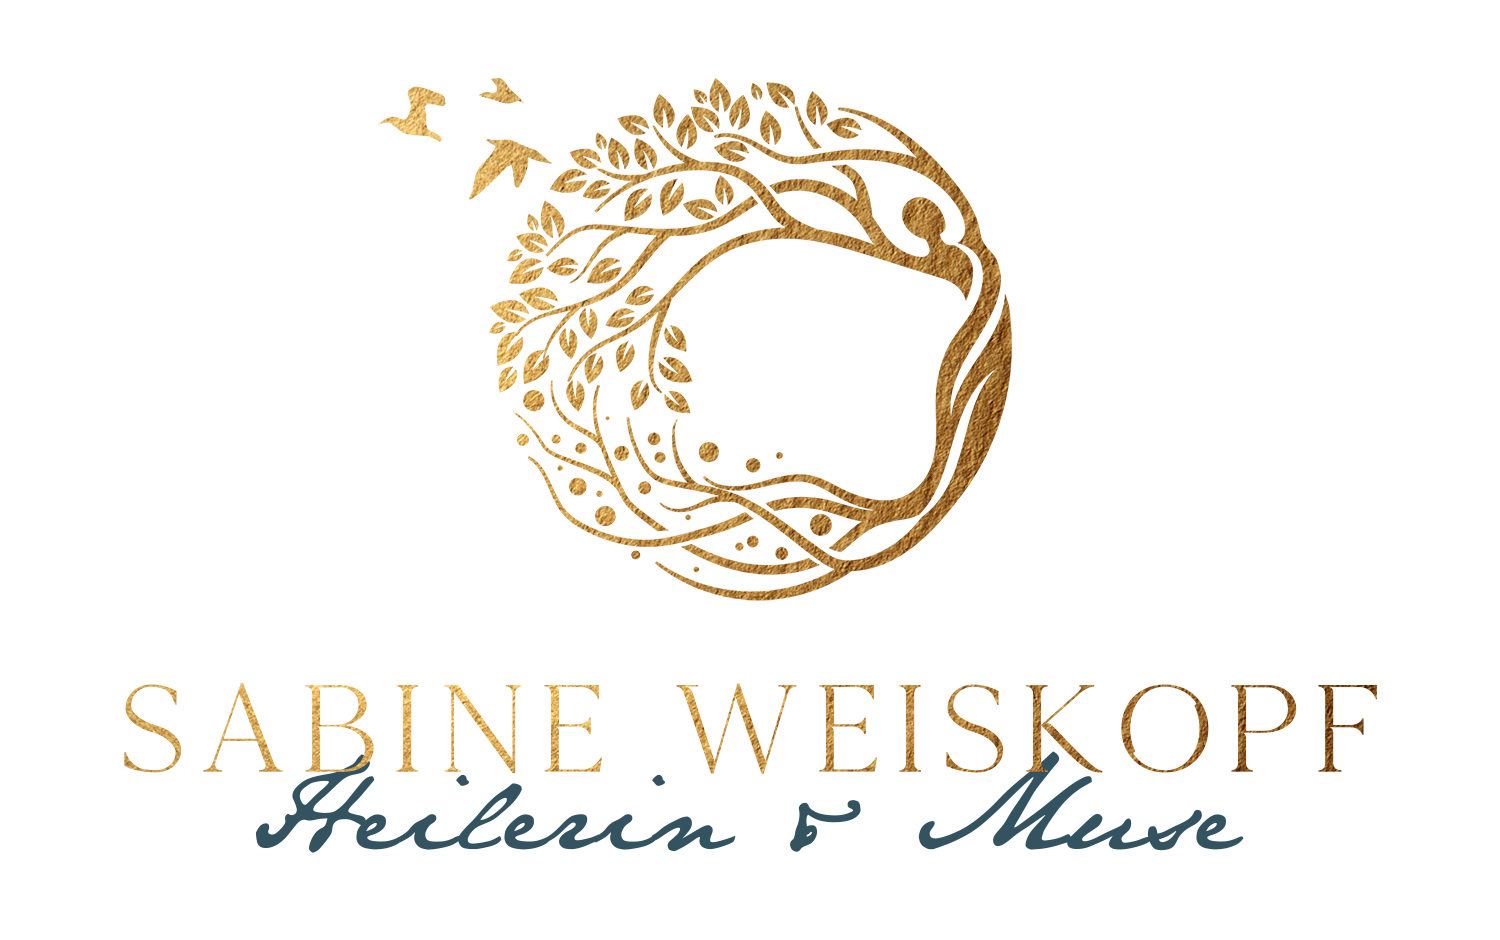 sabineweiskopf.com